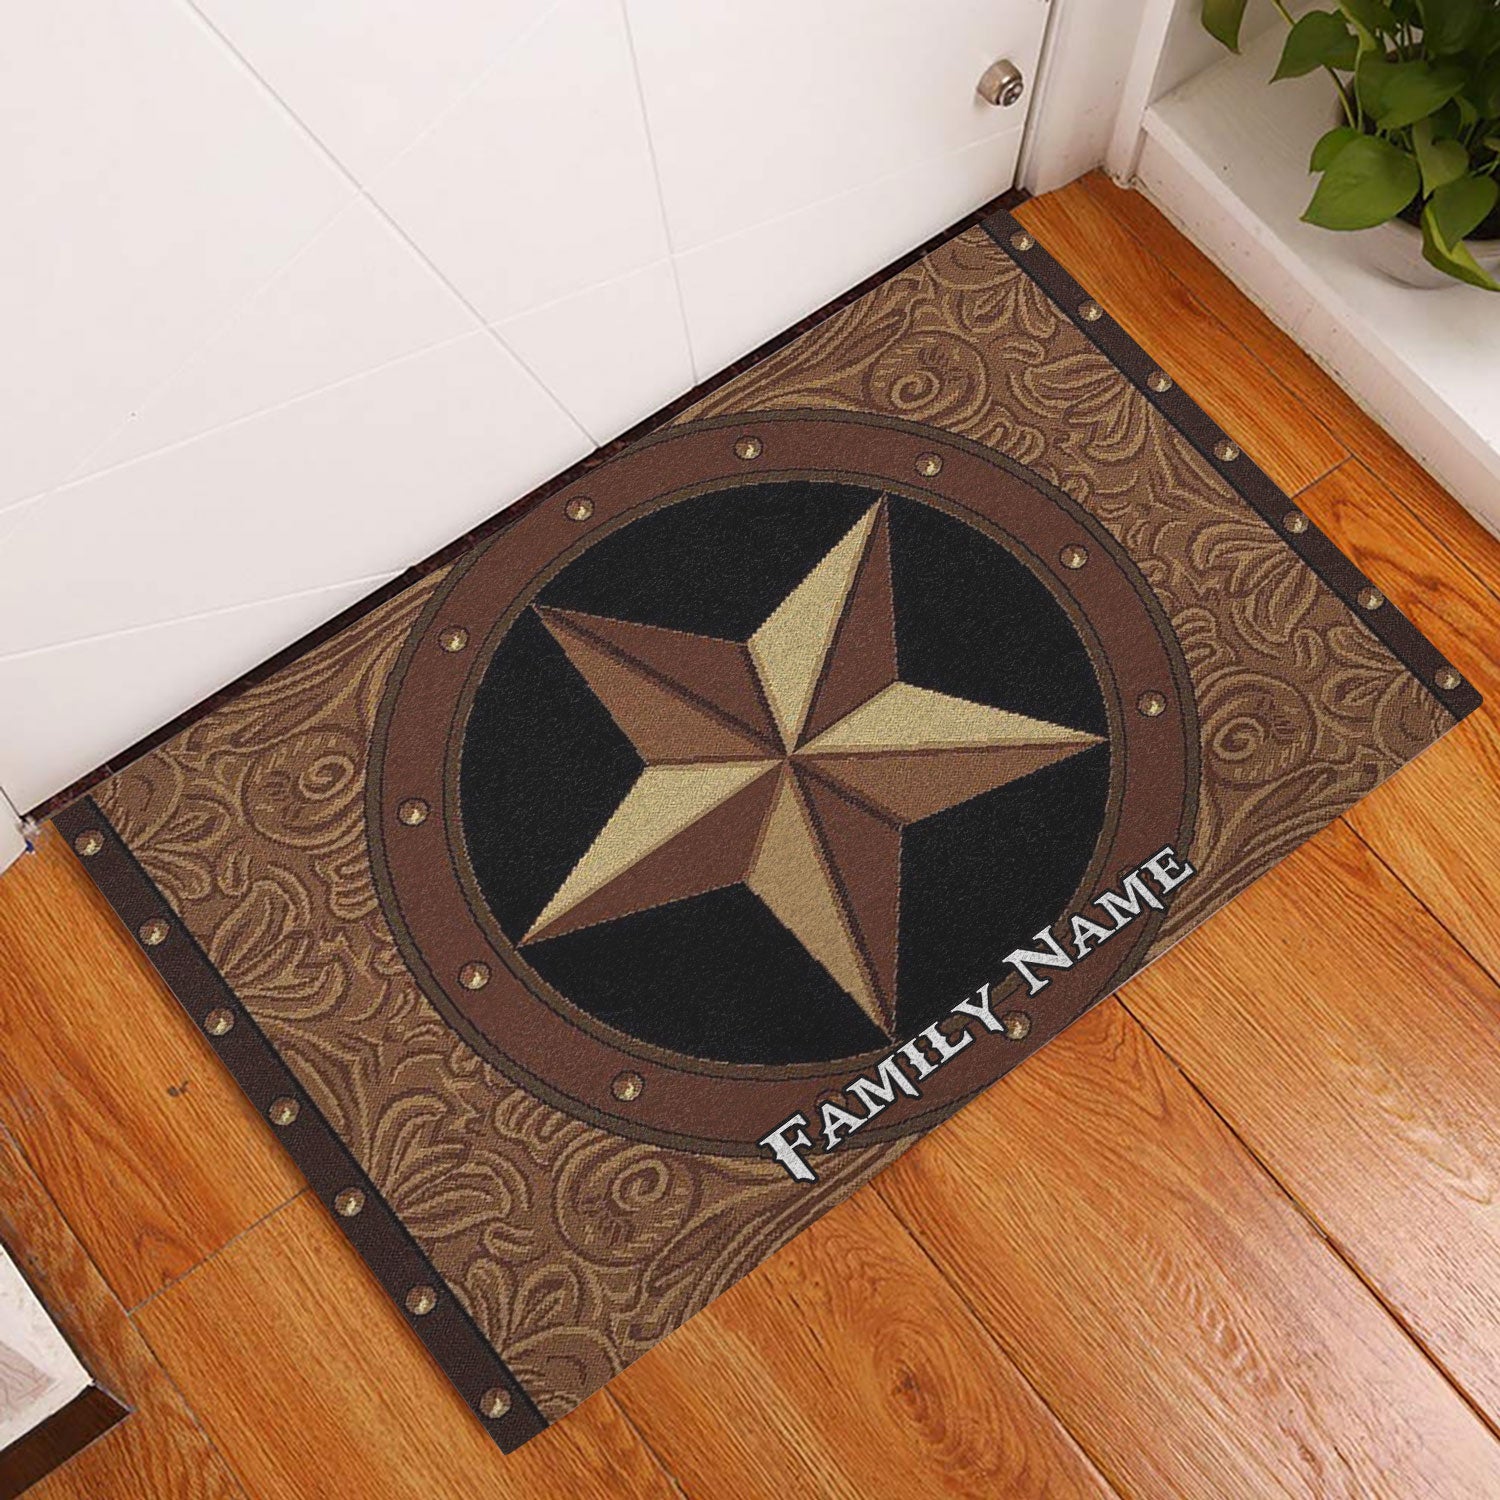 Ohaprints-Doormat-Outdoor-Indoor-Vintage-Texas-Star-Brown--Black-Custom-Personalized-Name-Rubber-Door-Mat-588-